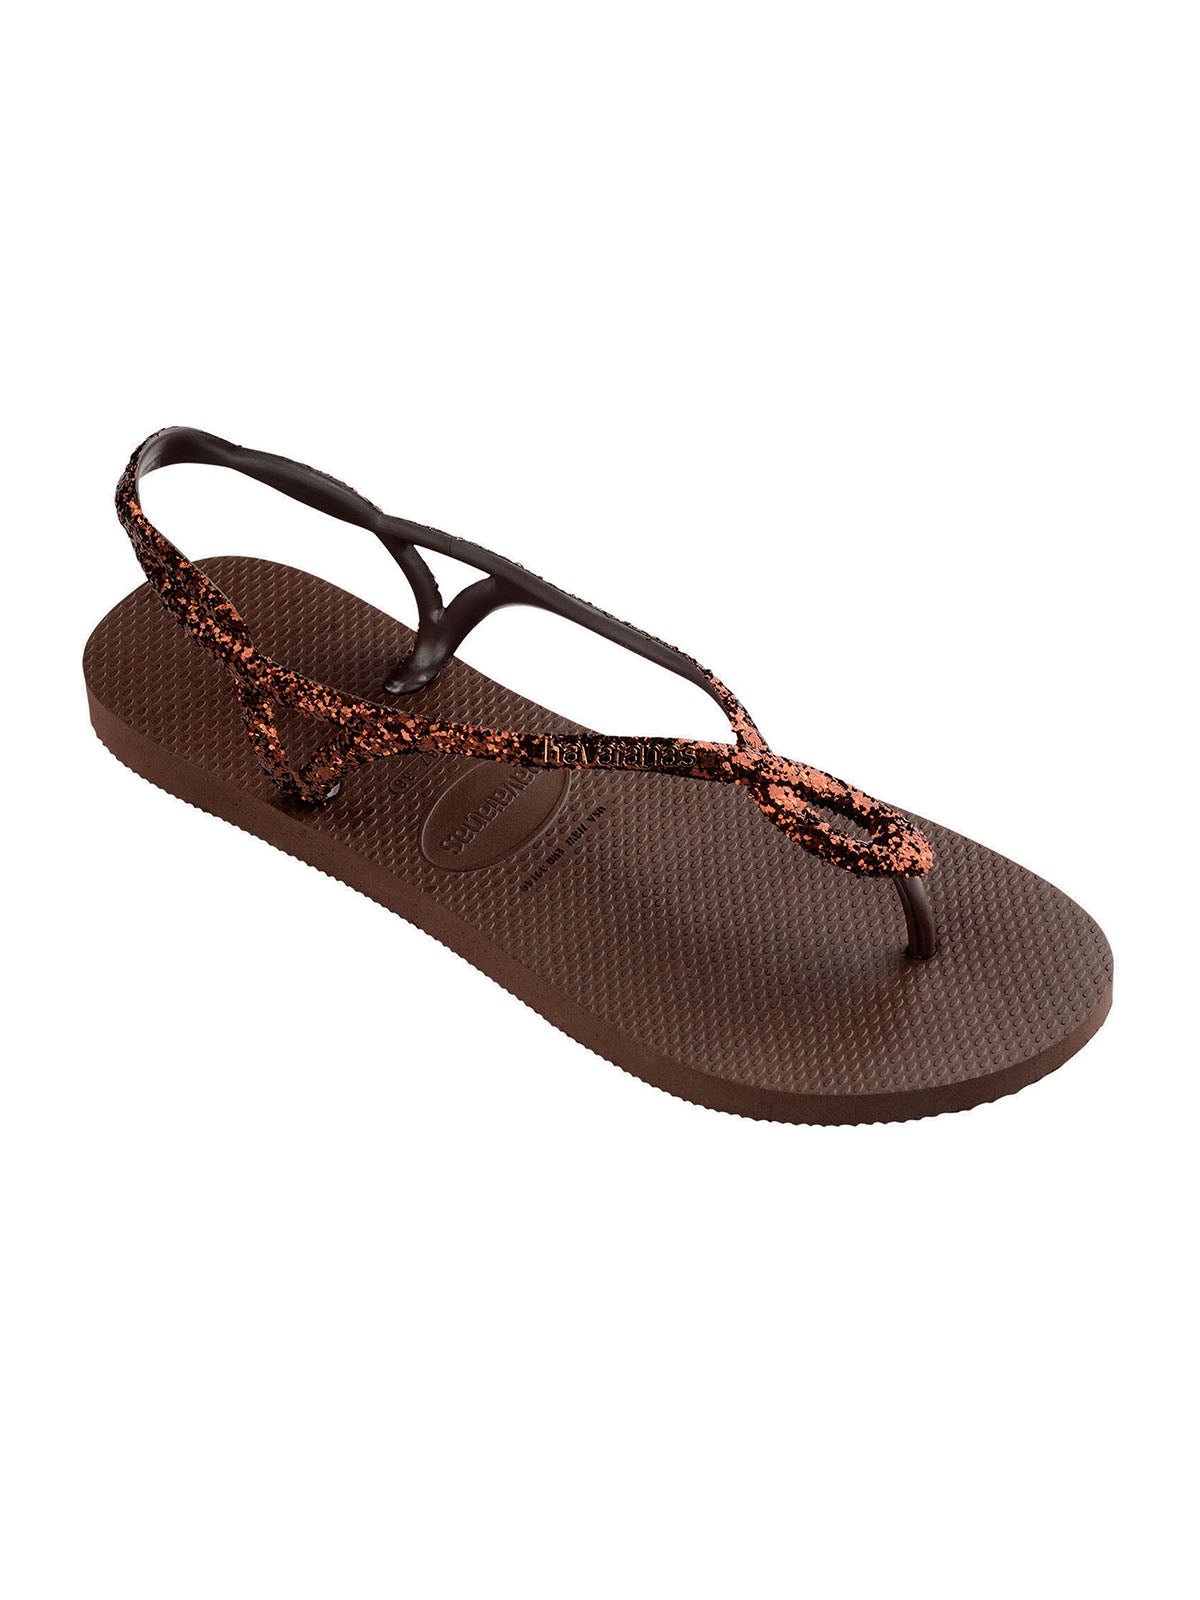 Havaianas Women's Sandals - Havaianas Luna Premium Ii - Brown